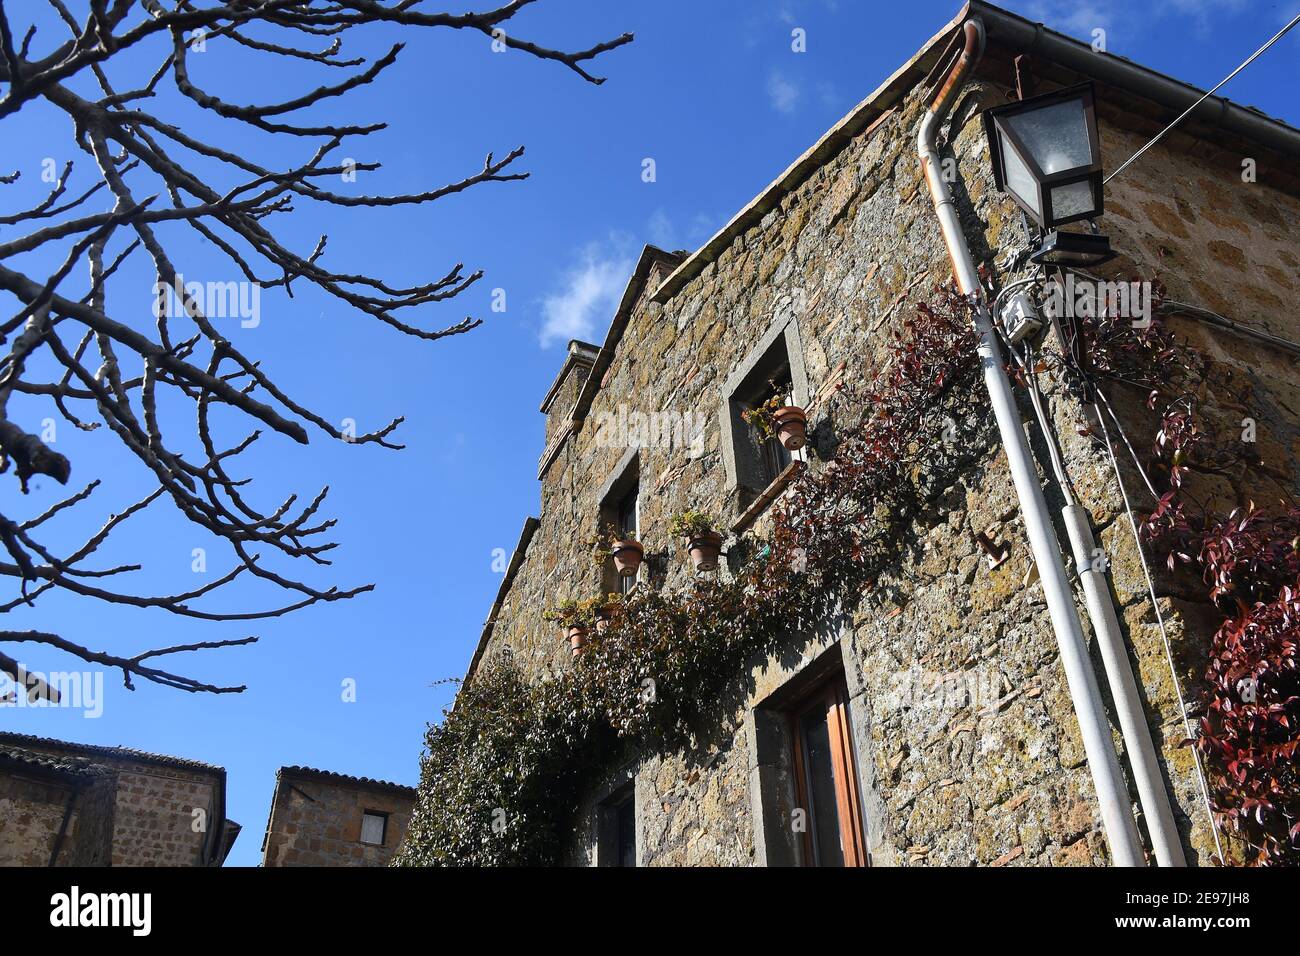 Civita est un hameau de 11 habitants de la commune de Bagnoregio, dans la province de Viterbo, en Latium, une partie des plus beaux villages d'Italie, chaque année coule plus et Civita di Bagnoregio a également été surnommé la ville qui meurt. Pour cette raison, le village a été classé par l'UNESCO comme un site du patrimoine mondial pour 2022, pour son paysage culturel d'une importance extraordinaire Civita est une fraction de 11 habitants dans la municipalité de Bagnoregio, dans la province de Viterbo, en Latium, Partie des plus beaux villages d'Italie, chaque année il coule plus et Civita di Bagnoreg Banque D'Images